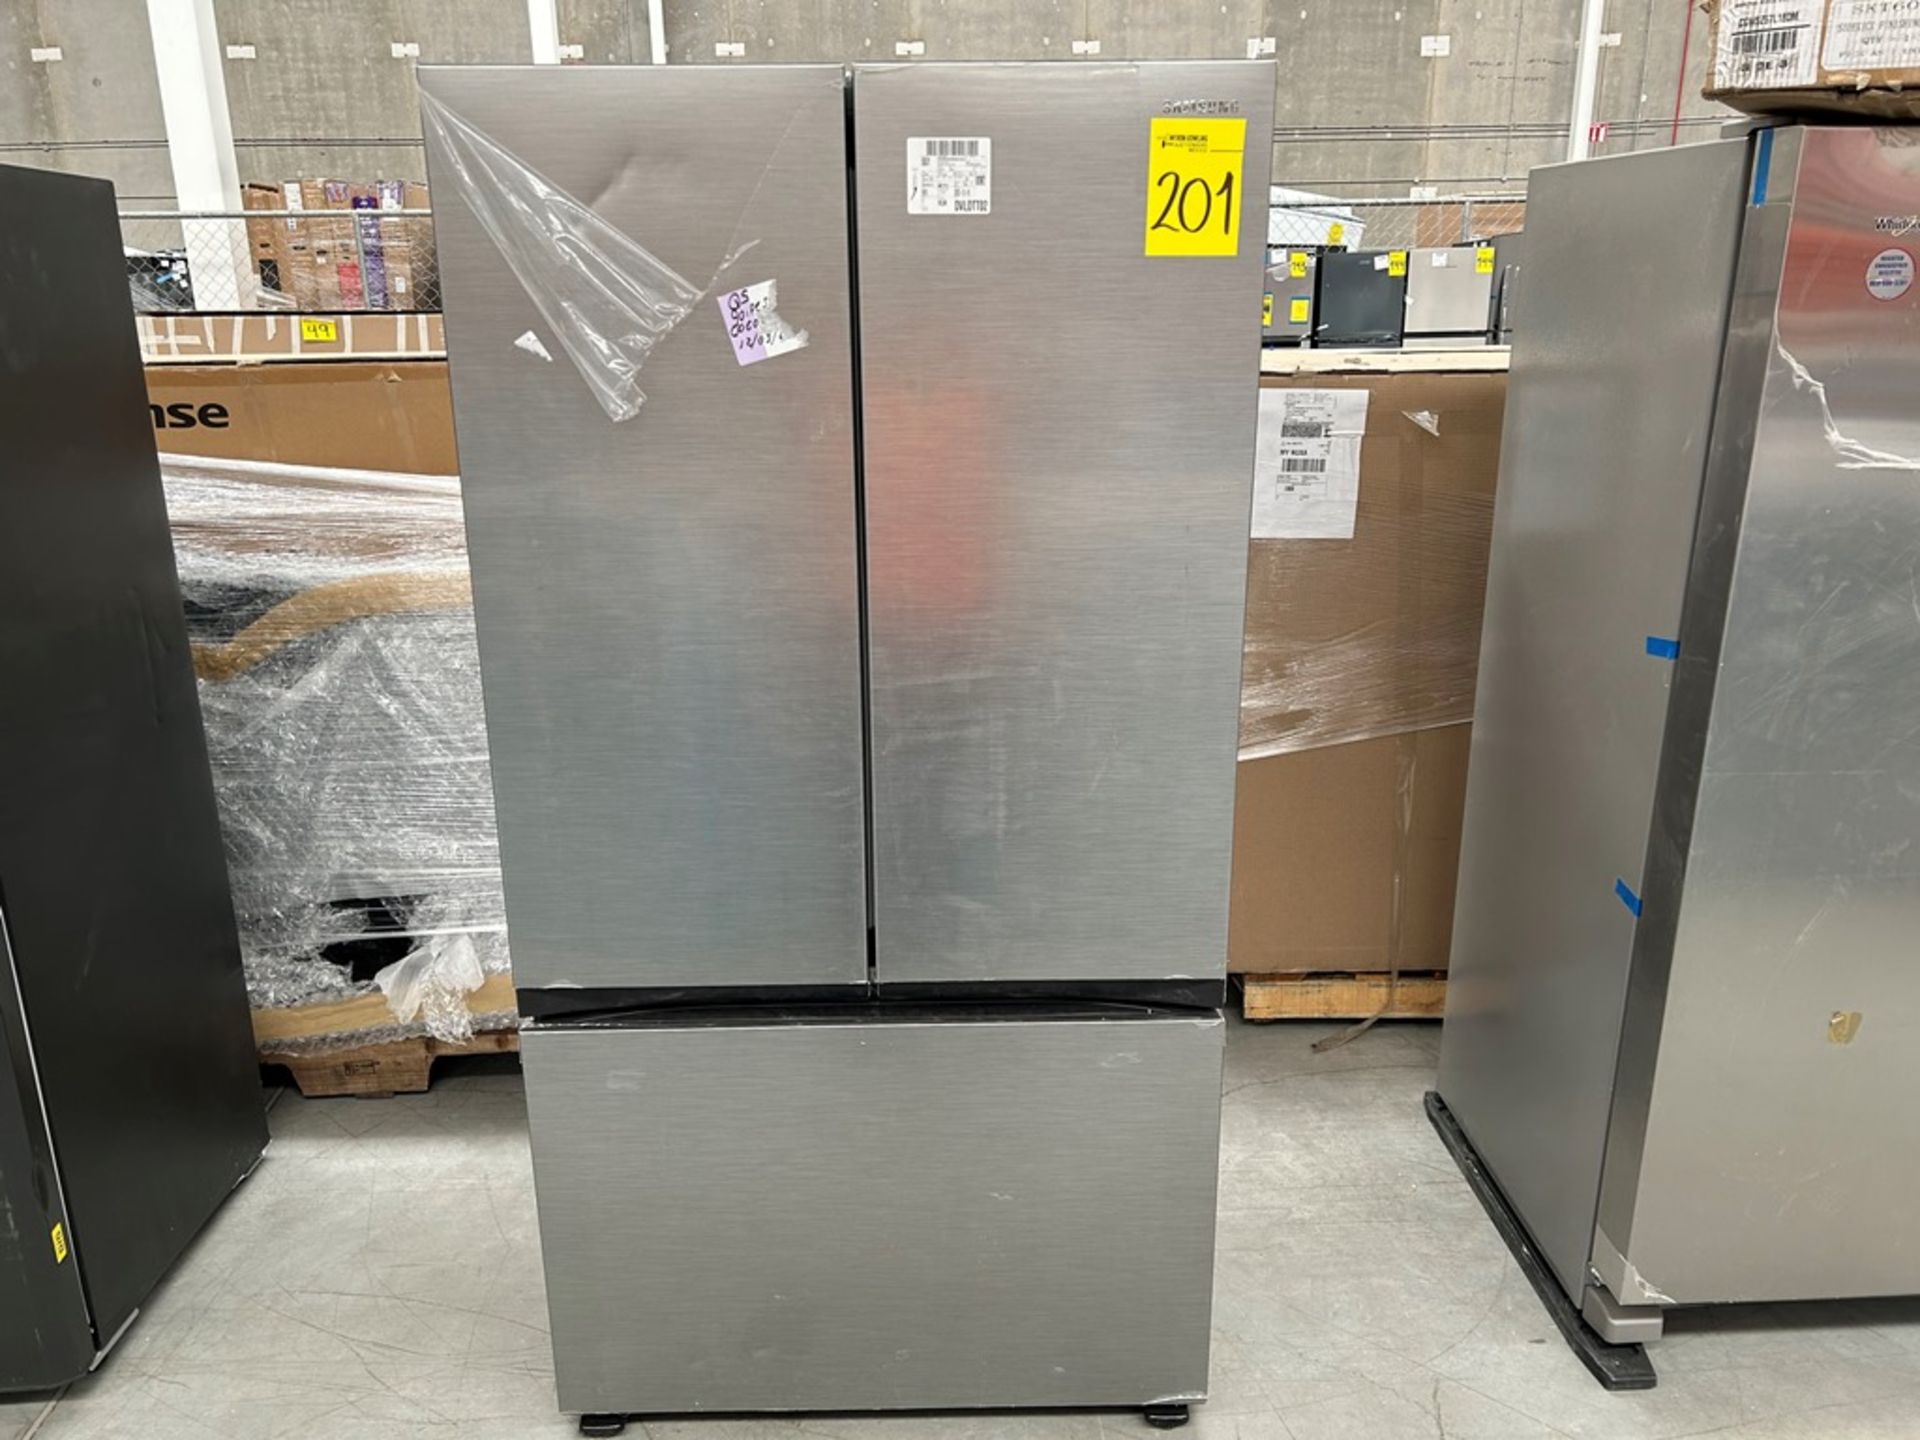 1 refrigerador Marca SAMSUNG, Modelo FR32CG5A10S9EM, Serie 01483D, Color GRIS (No se asegura su fu